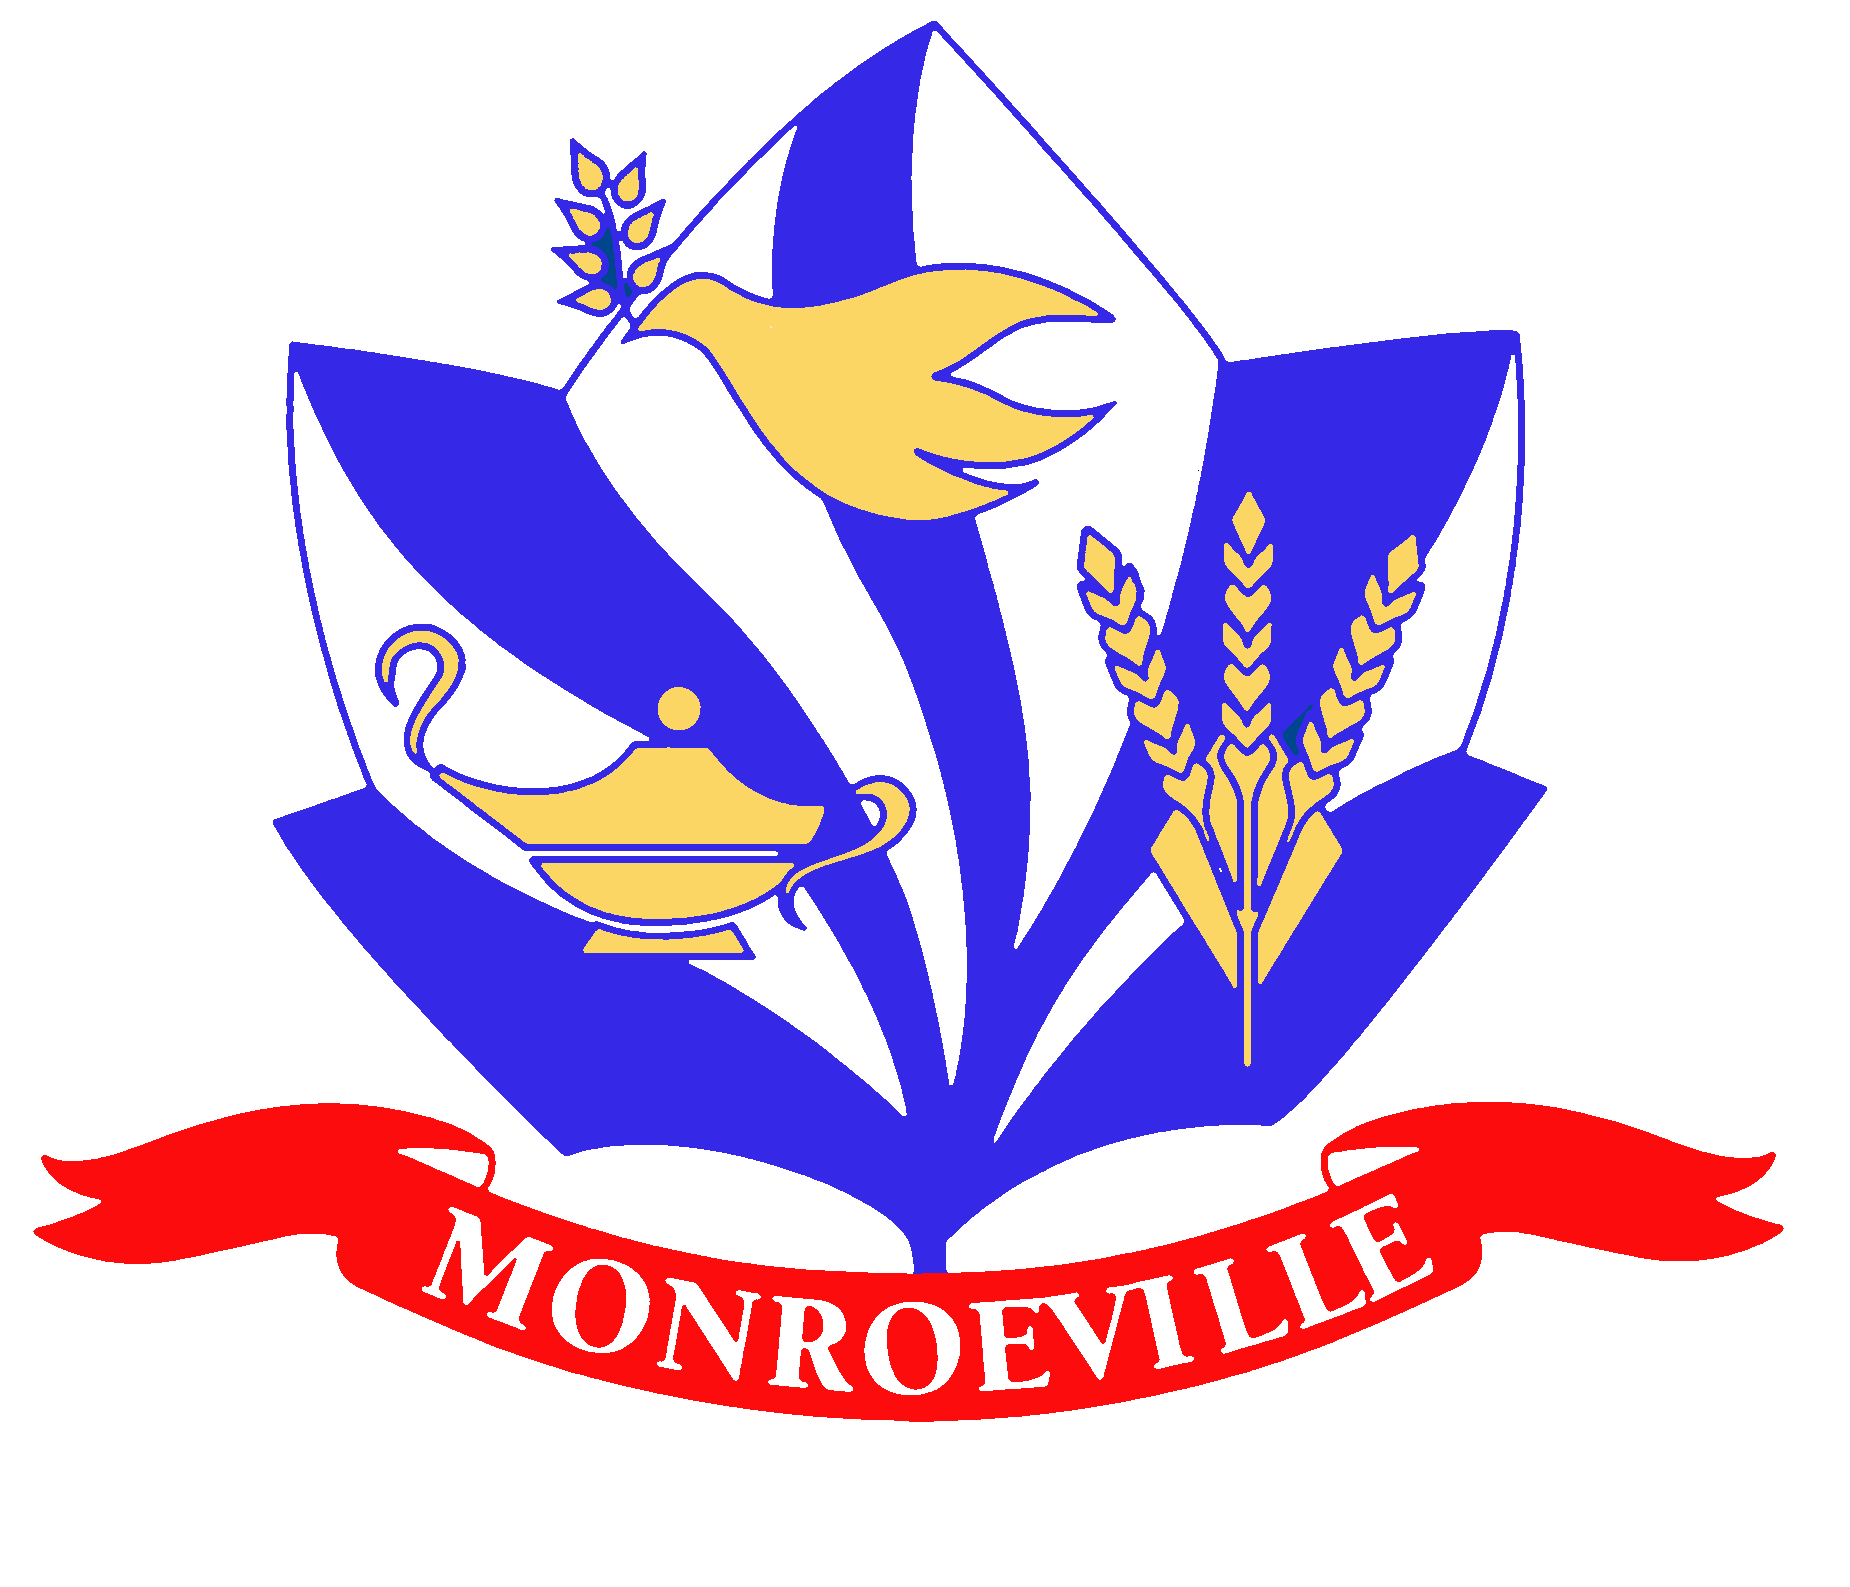 Monroeville_High Res logo